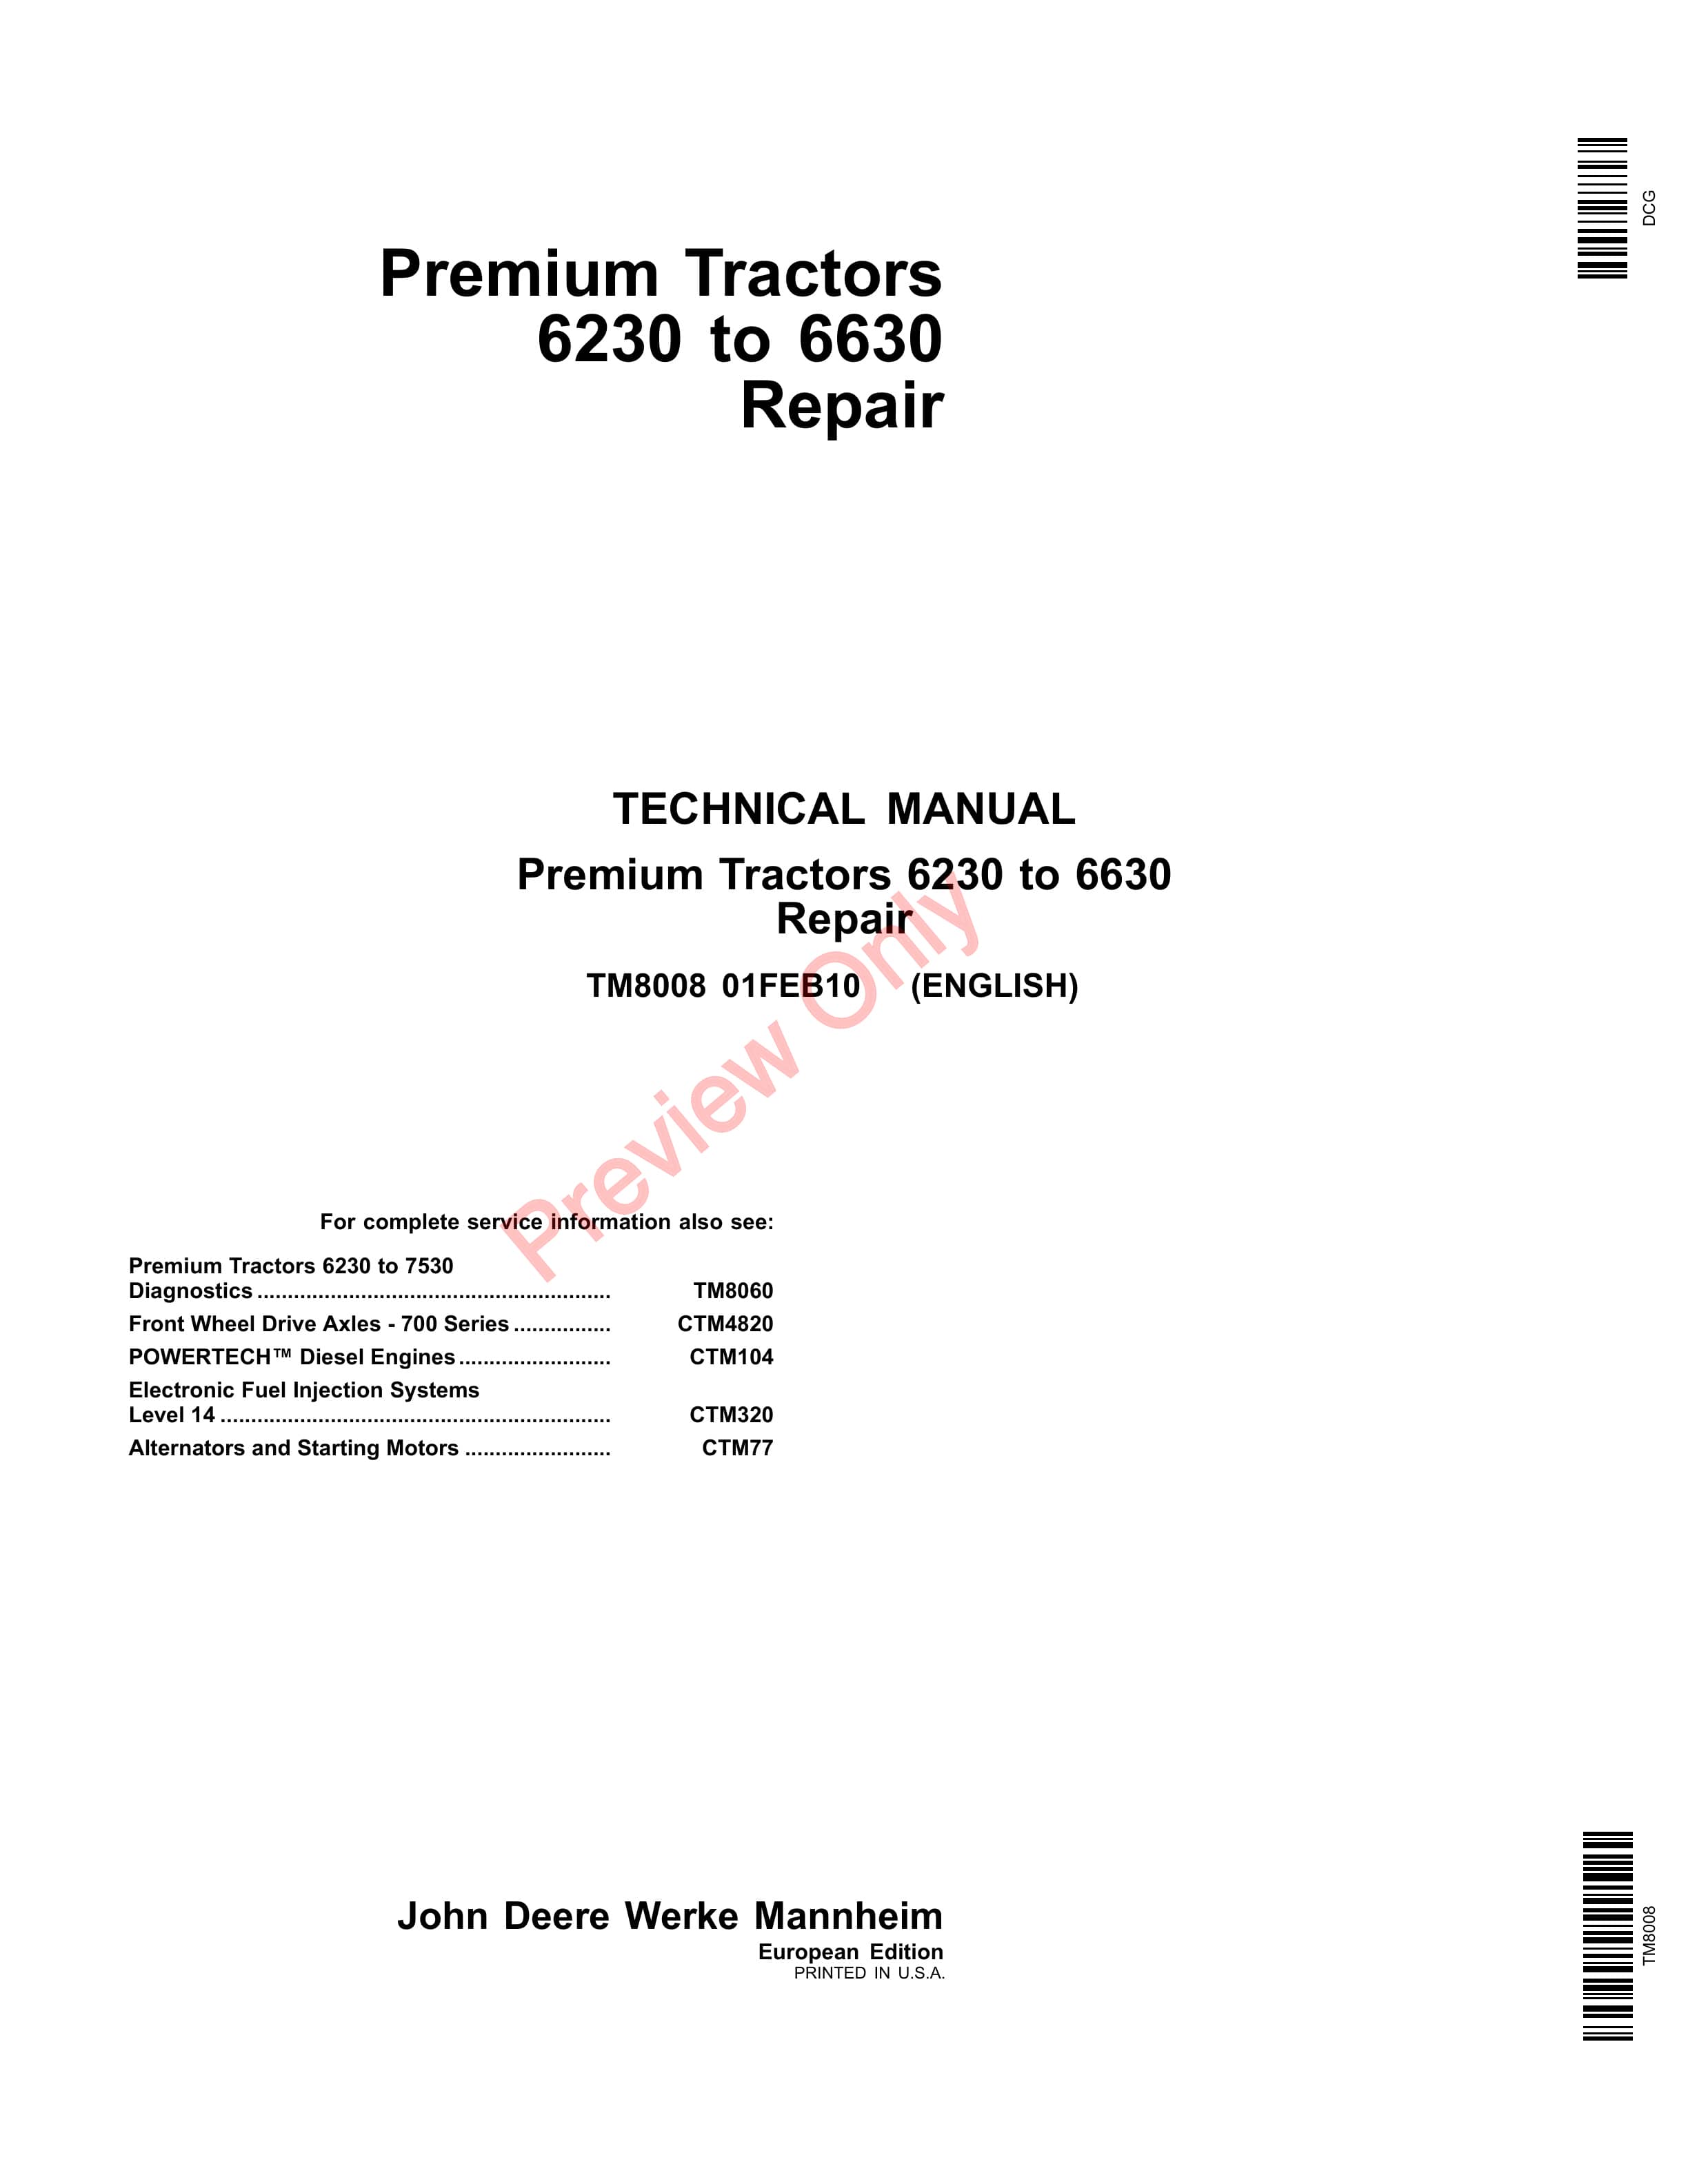 John Deere 6230 6330 6430 6530 and 6630 Premium Tractors Repair Technical Manual TM8008 01FEB13 PDF